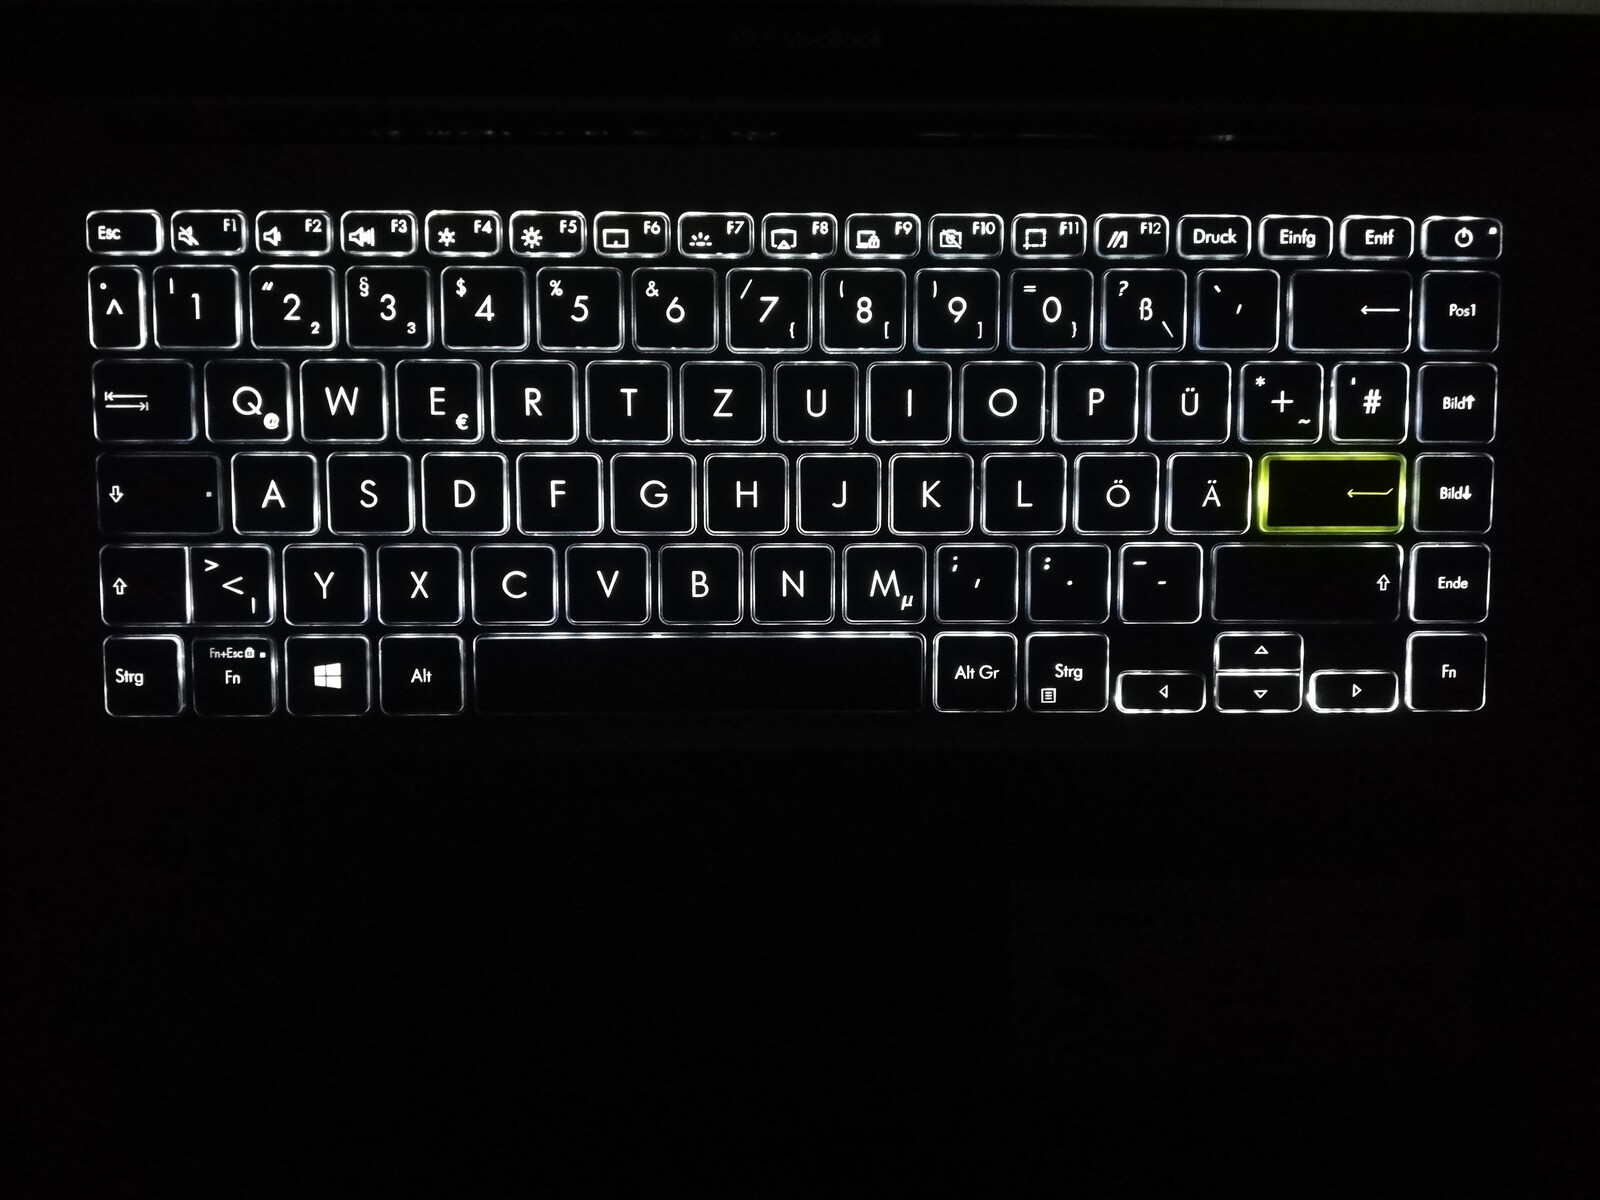 asus backlit keyboard laptop